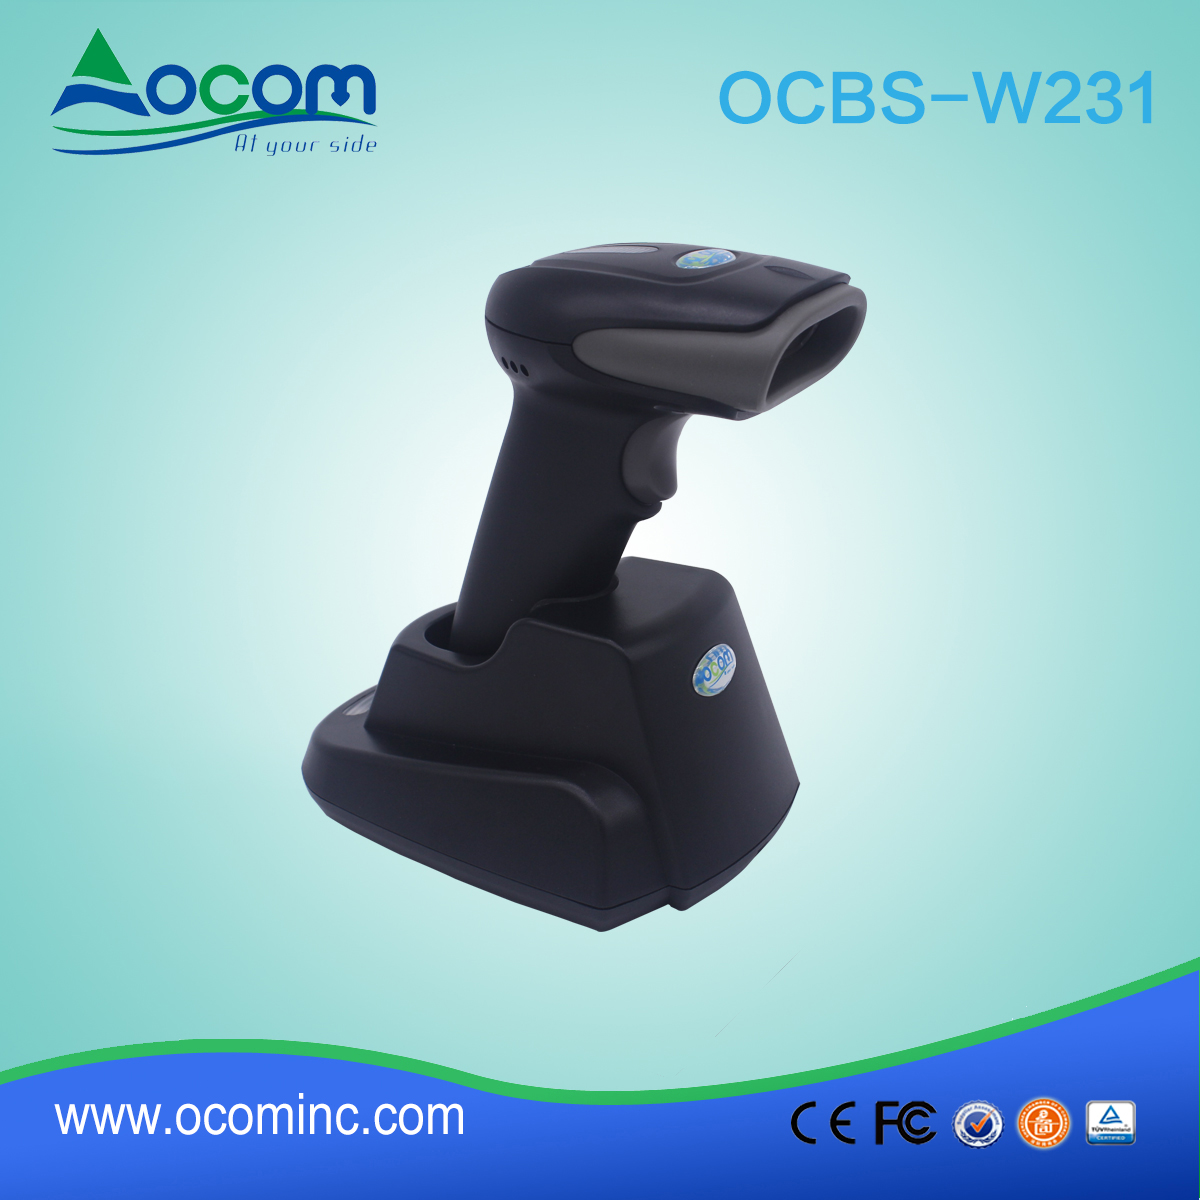 OCBS-W231 盘点库存用手持蓝牙 usb 条码扫描器